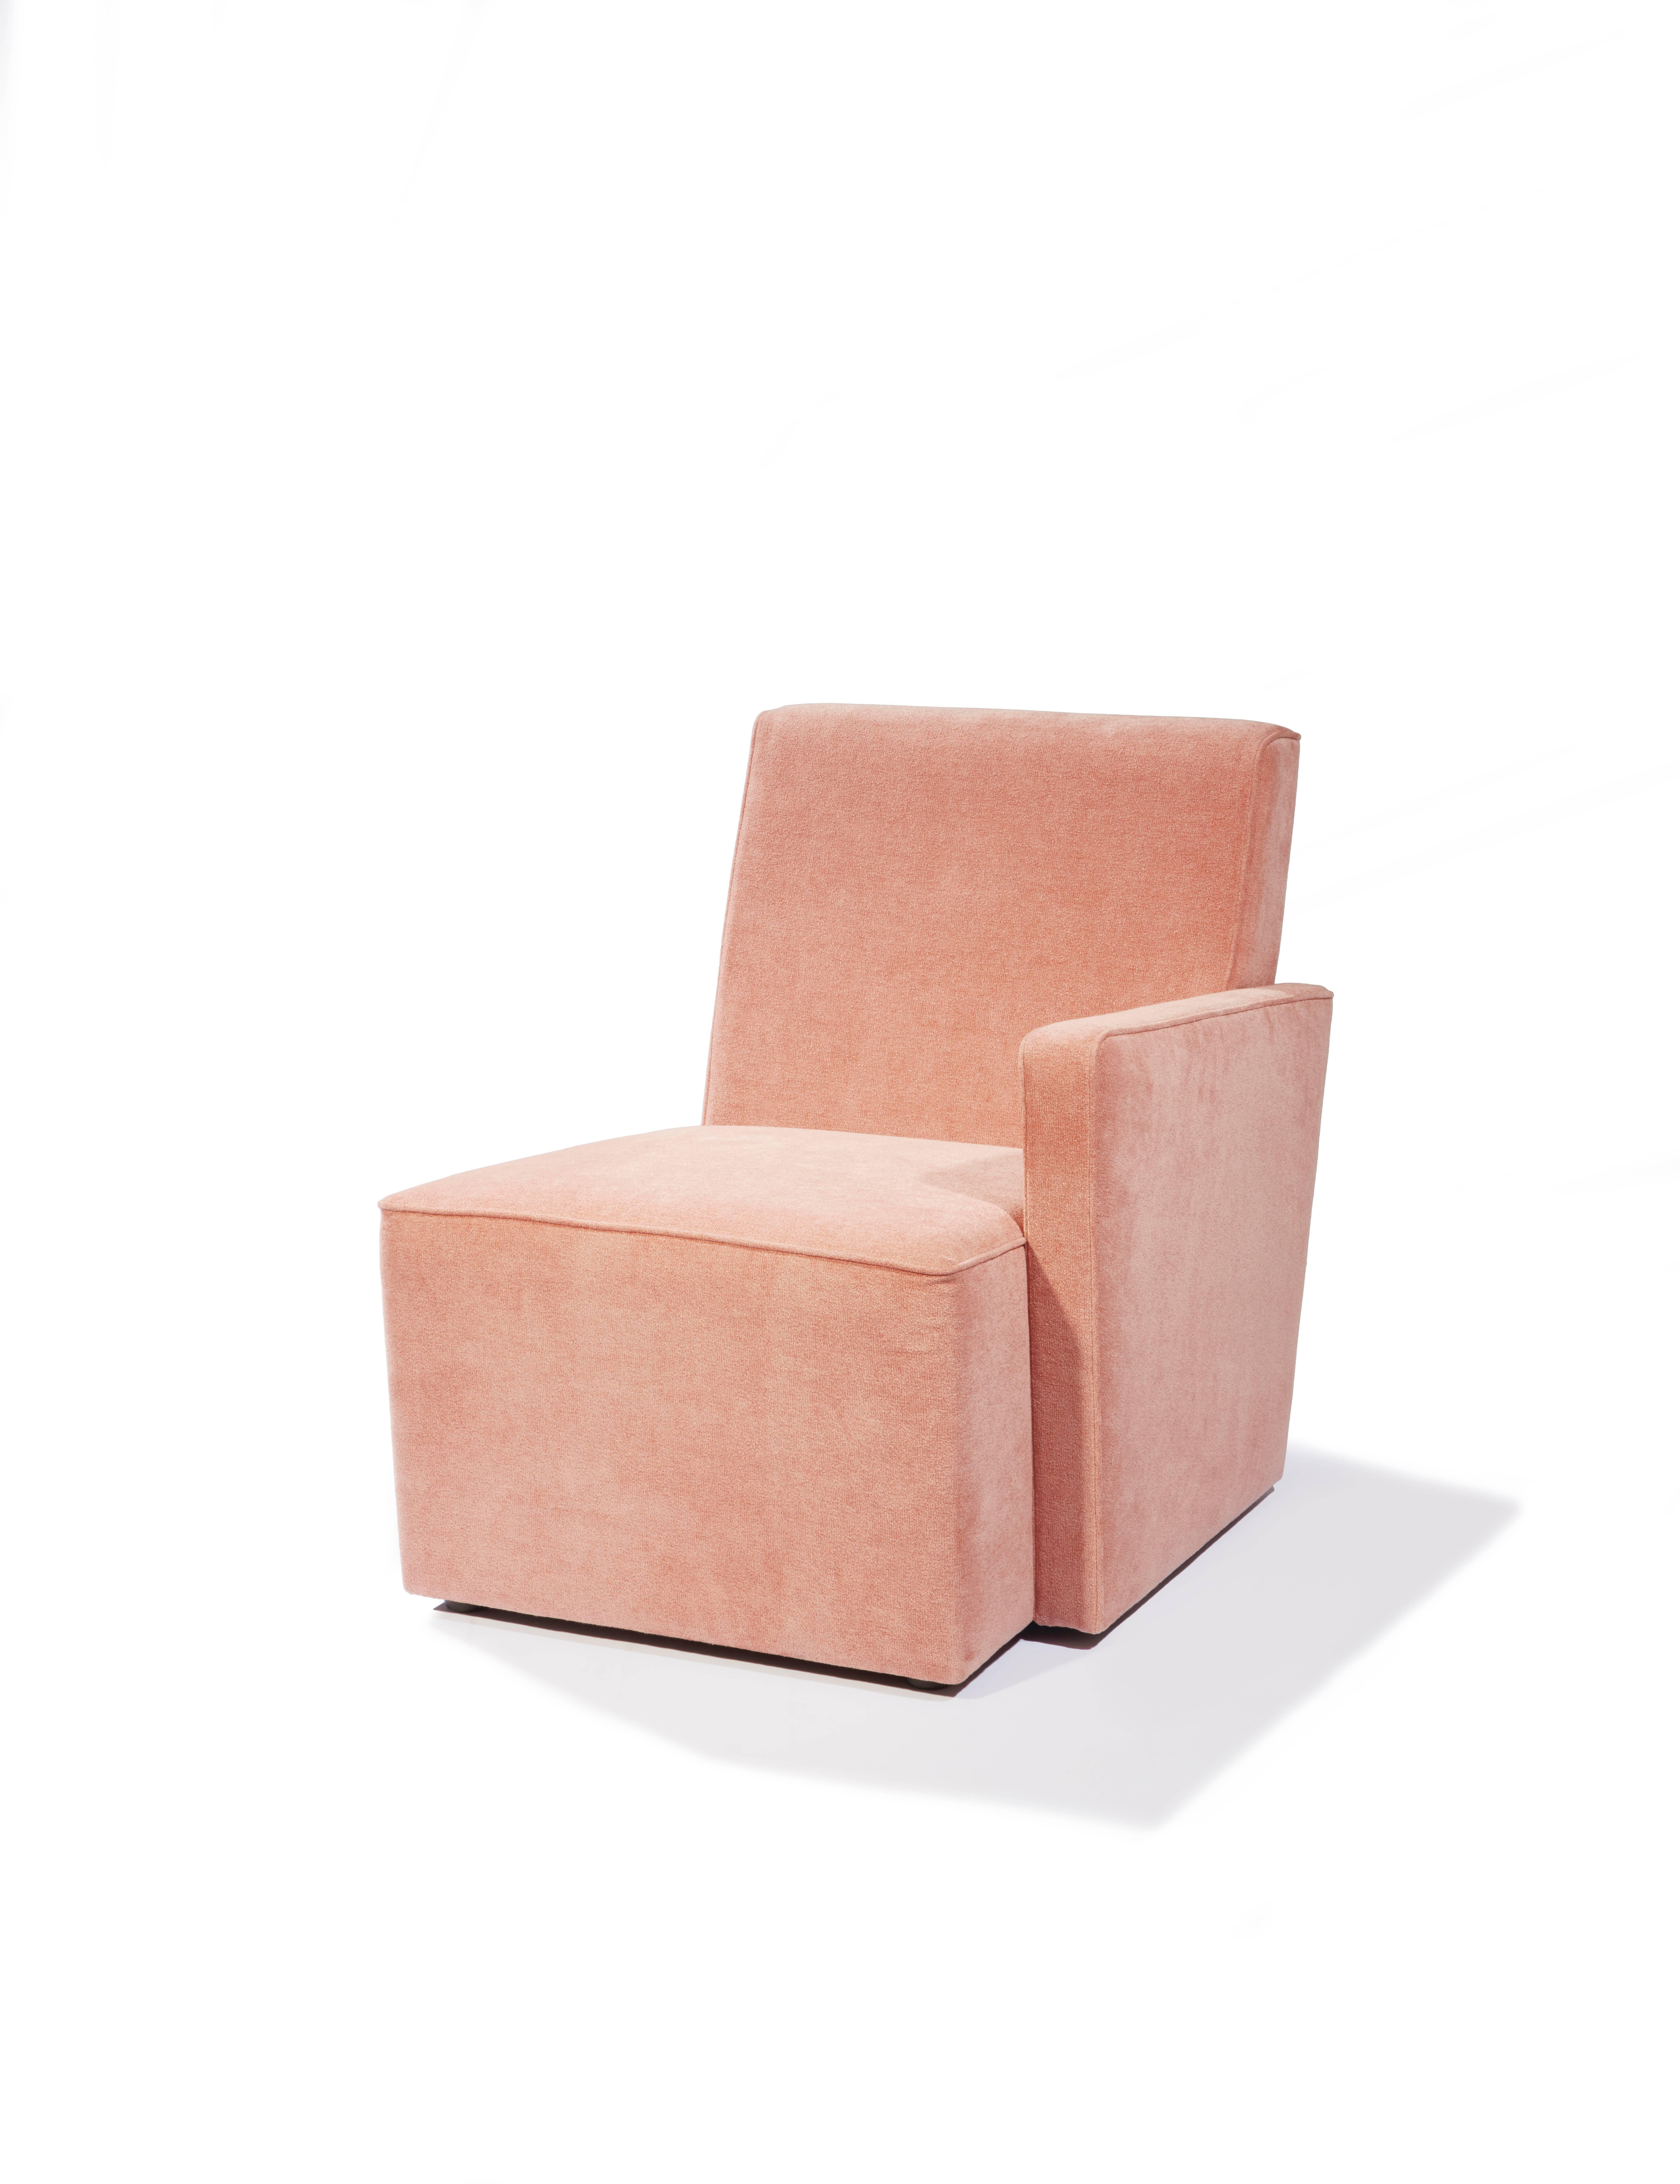 Petit Frank, fauteuil en velours conçu par Hervé Langlais pour la Galerie Negropontes à Paris, France.
Après avoir exploré les matériaux rares, puis les aspects sculpturaux du design dans la veine de Brancusi et enfin le graphisme, Hervé Langlais